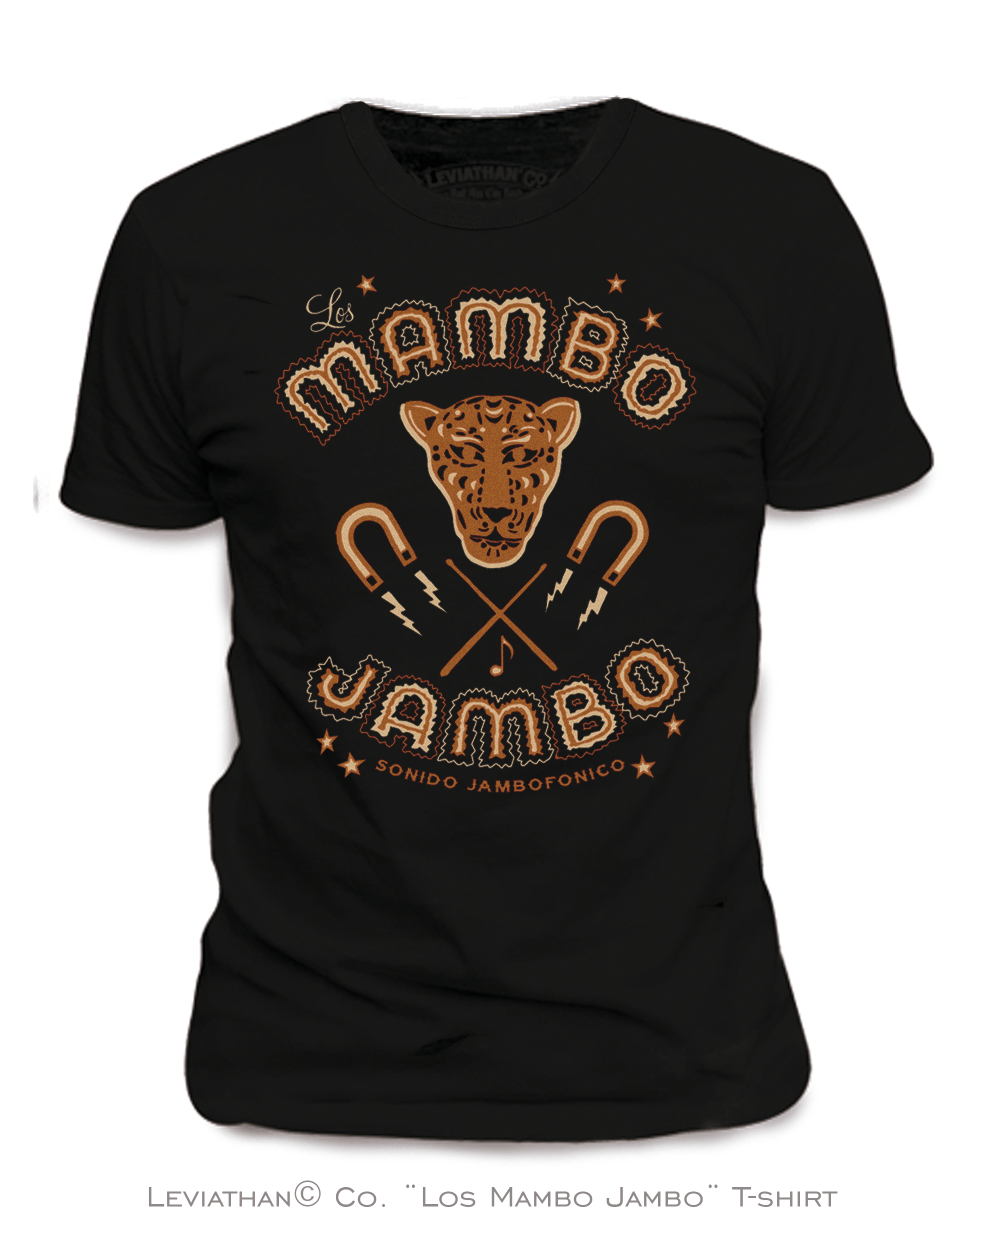 Camiseta Los Mambo Jambo - Sonido Jambofónico - Negra - Chica